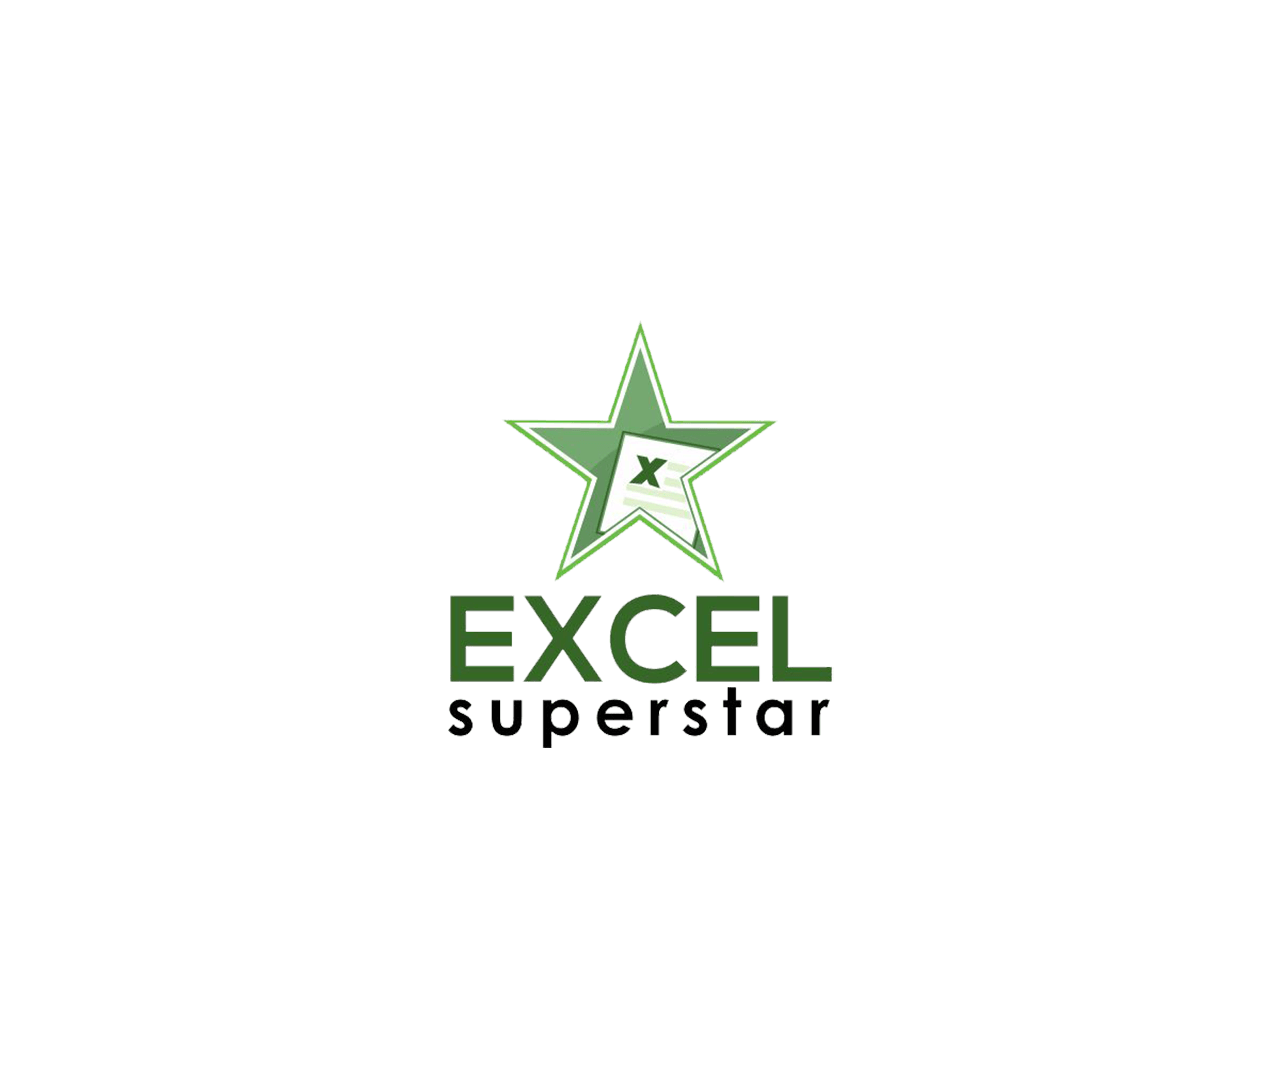 Excel Superstar